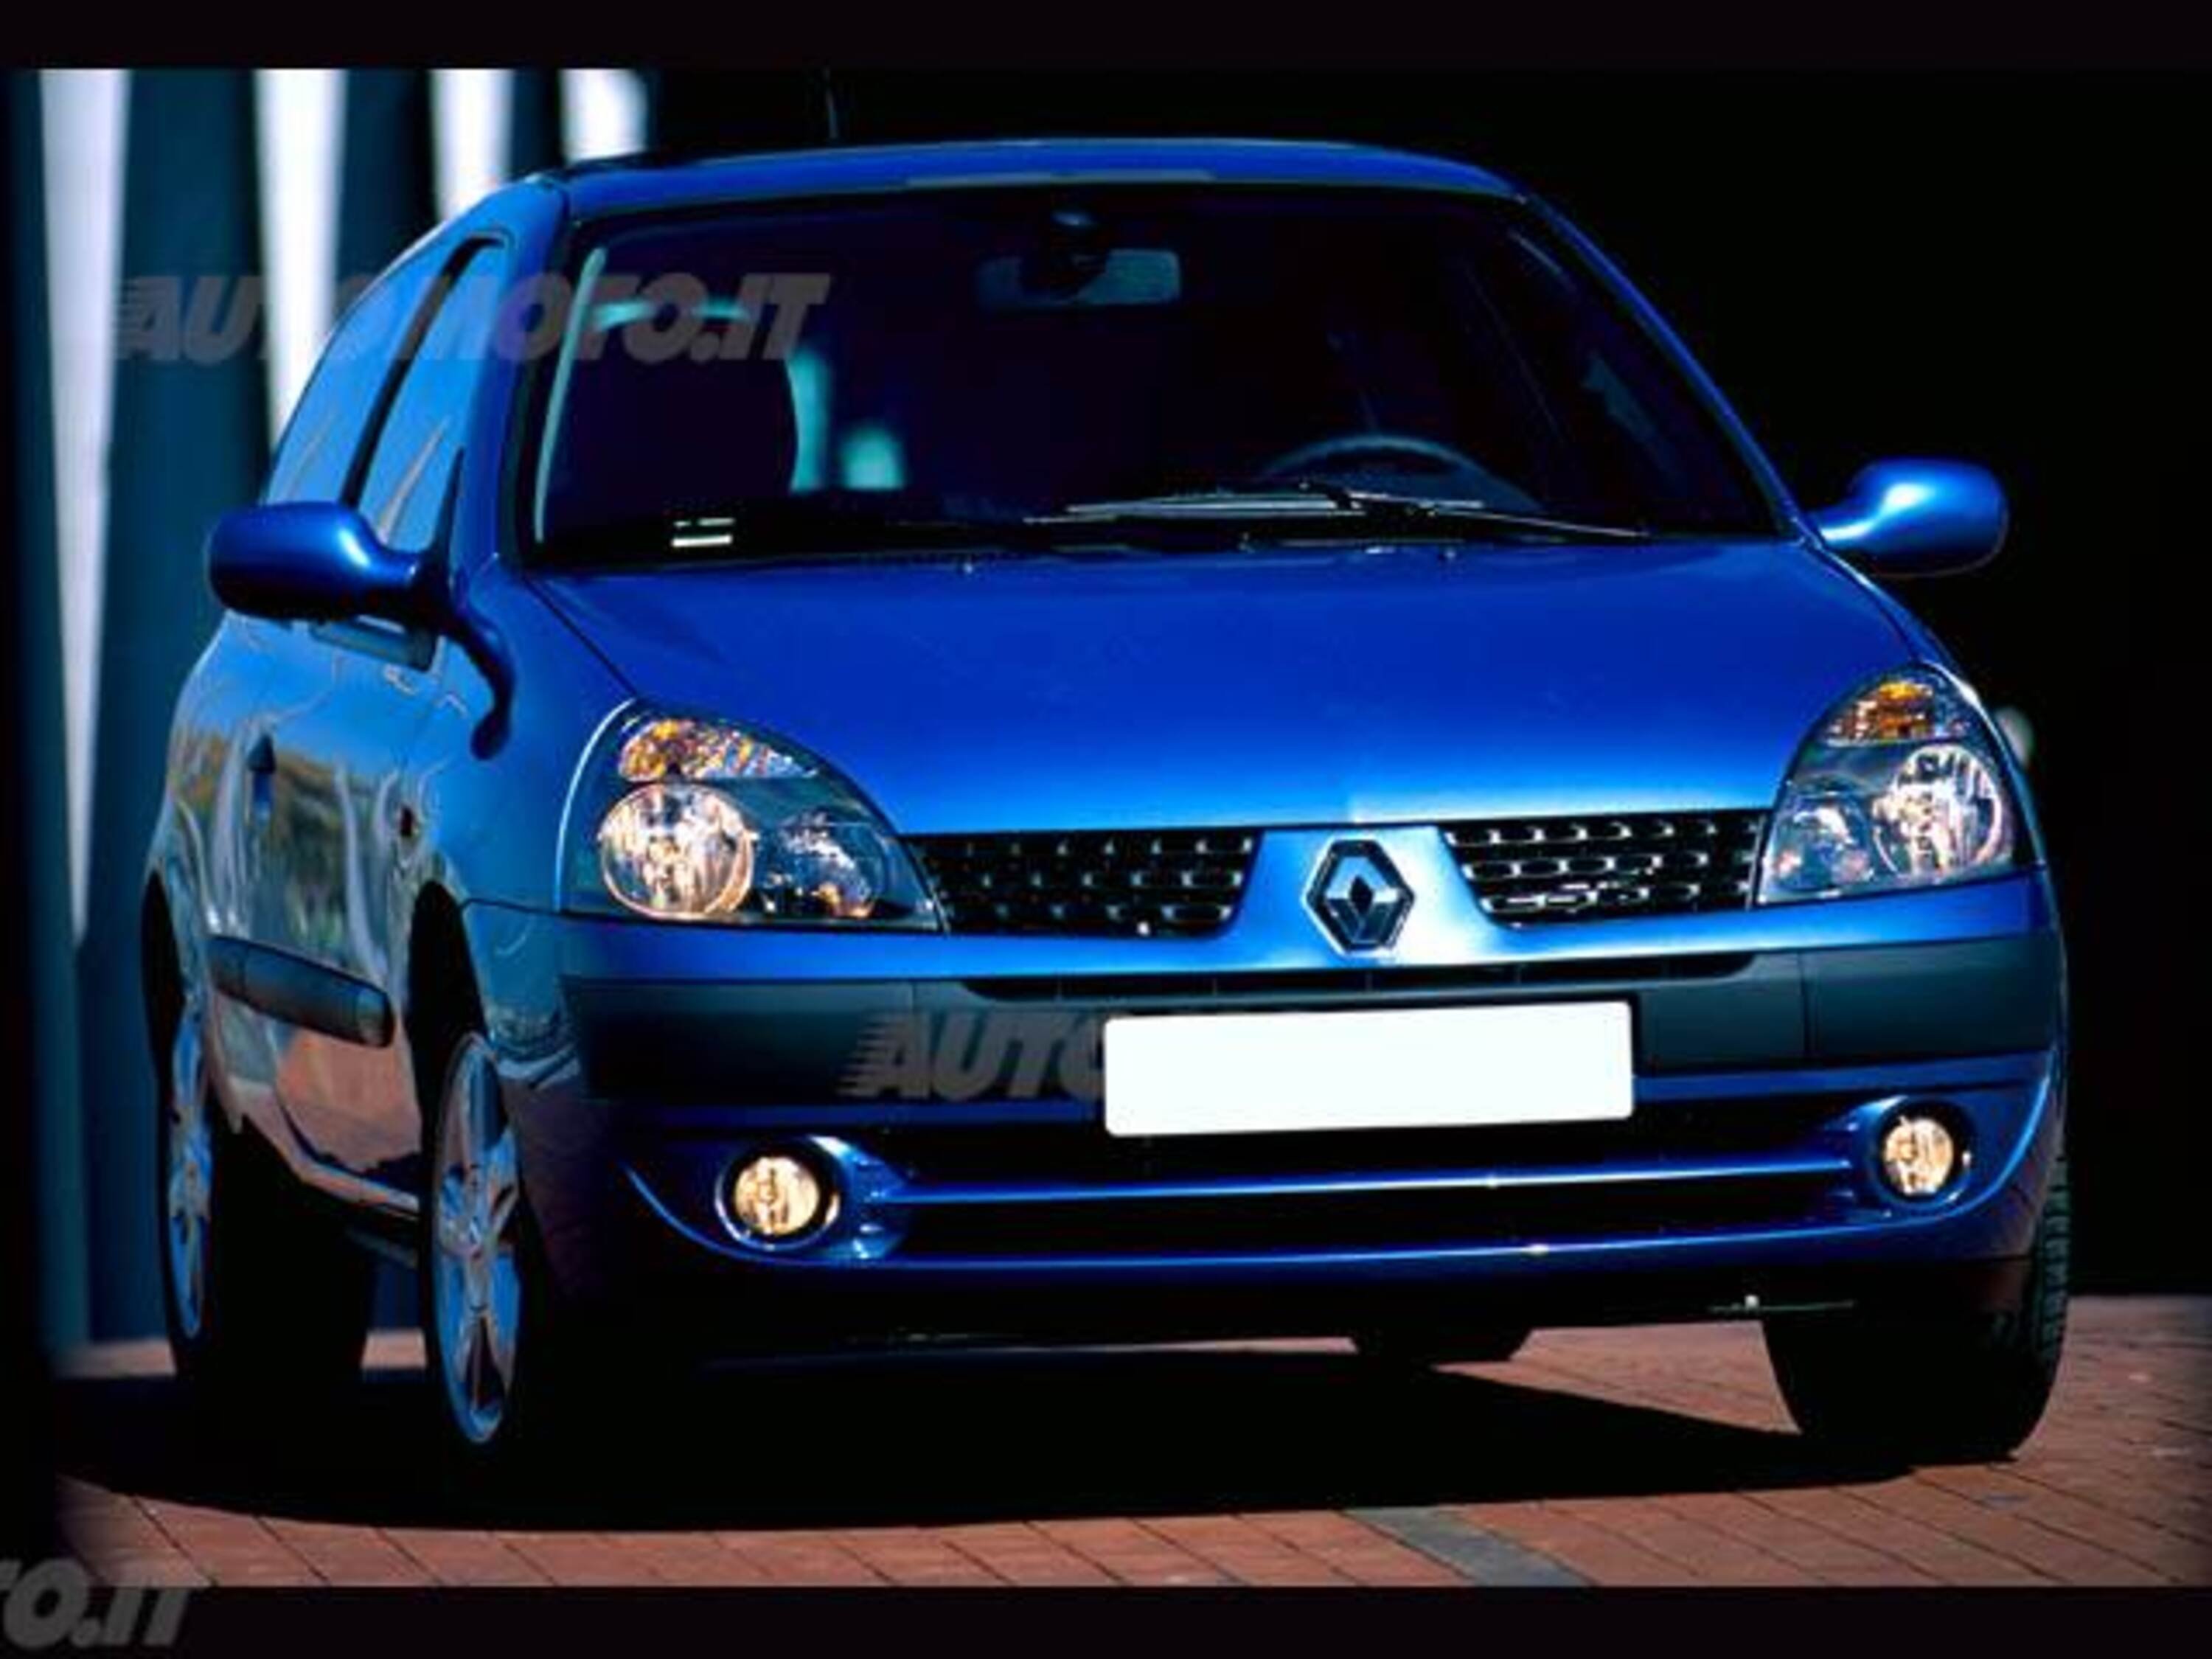 Renault Clio 1.5 dCi 65CV cat 3 porte Limited